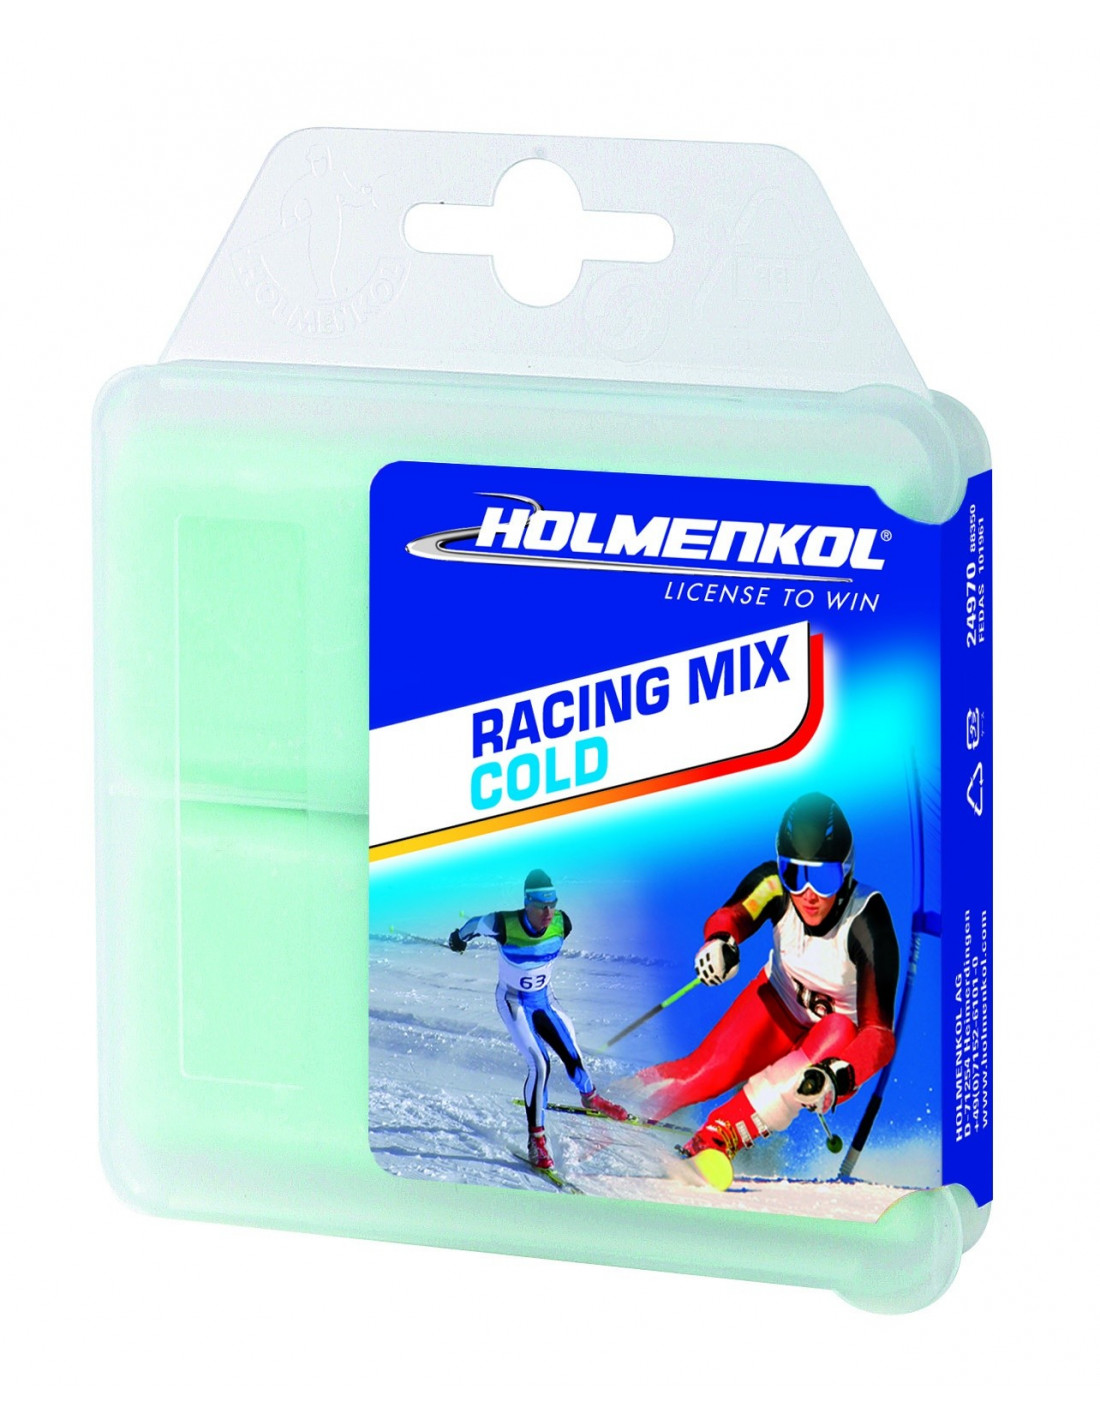 Holmenkol RacingMix COLD 150g Wachsart - Blockwachs, Wachsfarbe - Blau, Wachsqualität - High Fluor, Einsatzbereich - Alpin, Wachs Holmenkol - -10° bis -18°, von Holmenkol